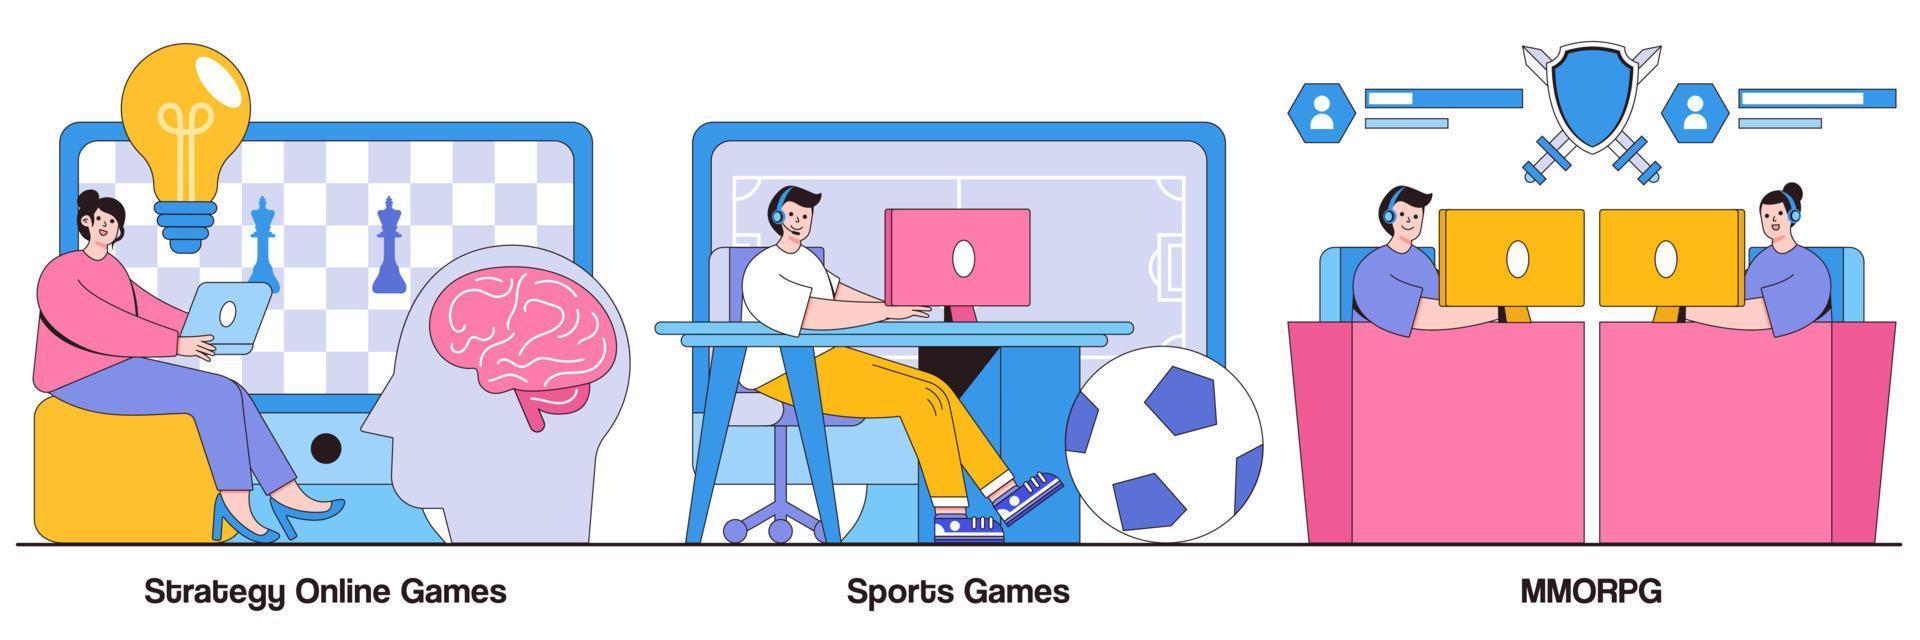 strategie-online-spiele, sportspiele, mmorpg mit illustrationspaket für personencharaktere vektor